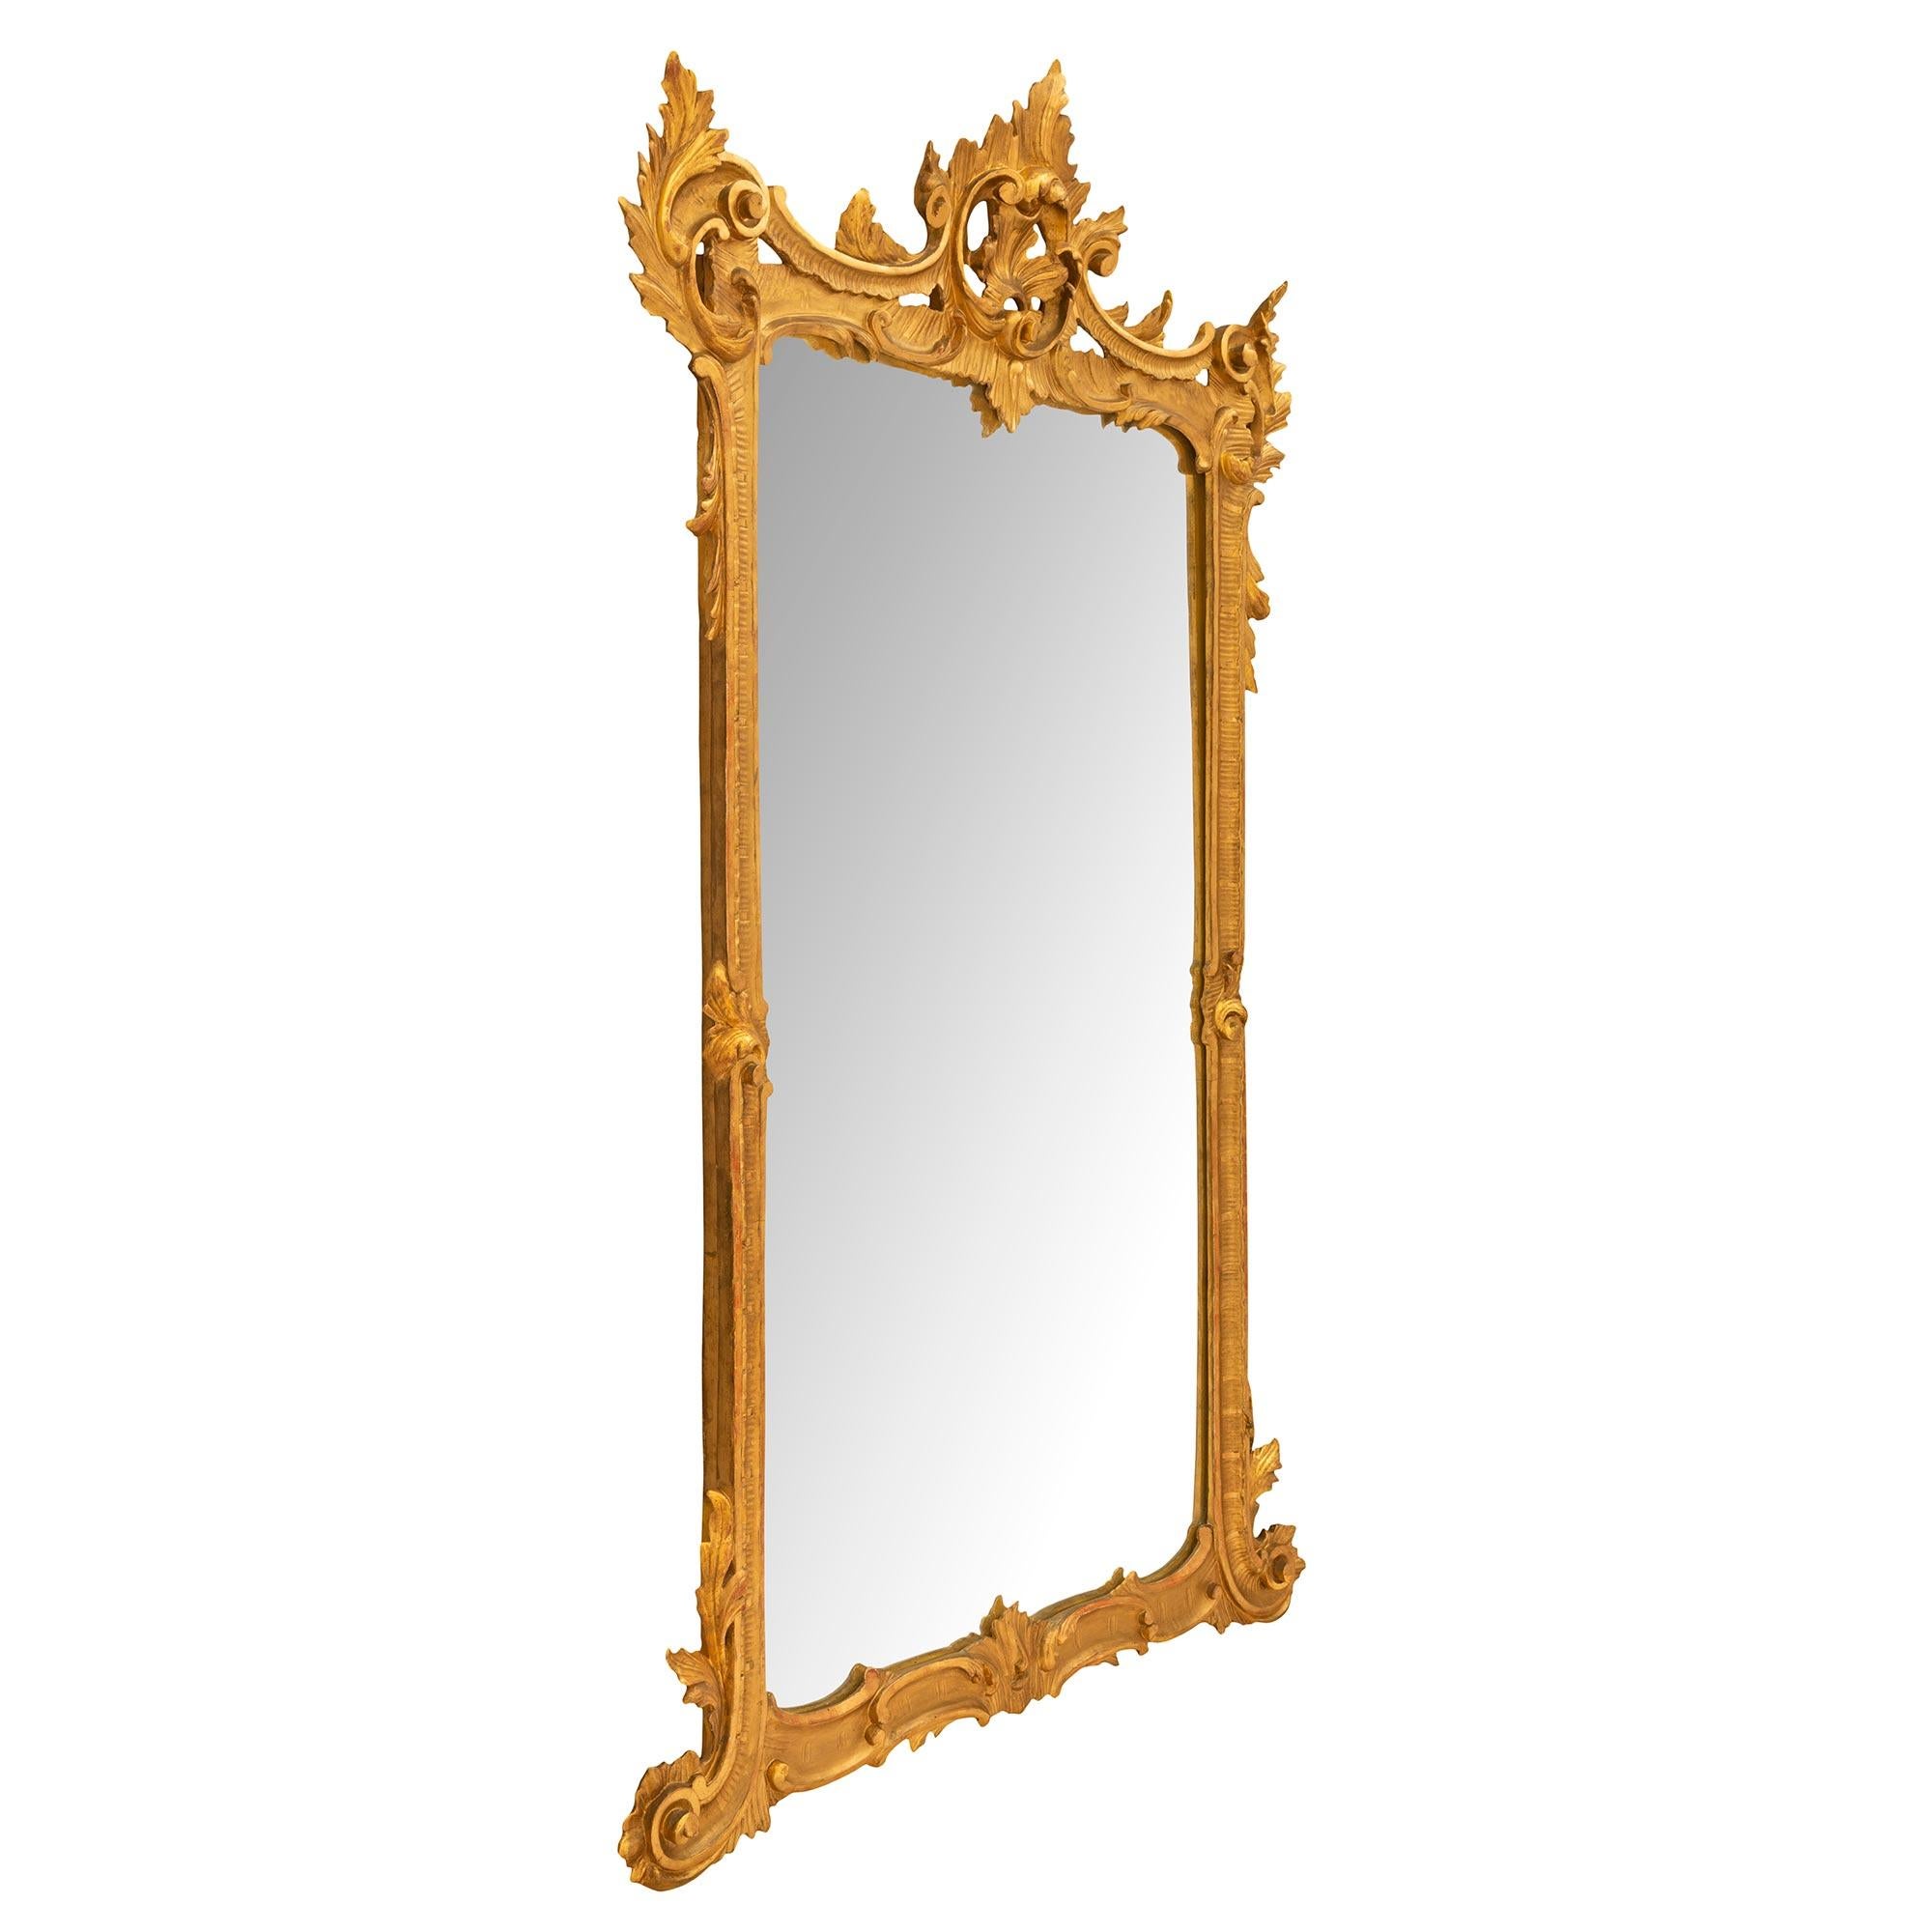 Merveilleux miroir italien du 19ème siècle en bois doré de style Louis XV. La plaque de miroir d'origine est encadrée dans une saisissante et unique bordure en bois doré mouluré avec d'élégants mouvements en forme de C. Le fond est orné de riches